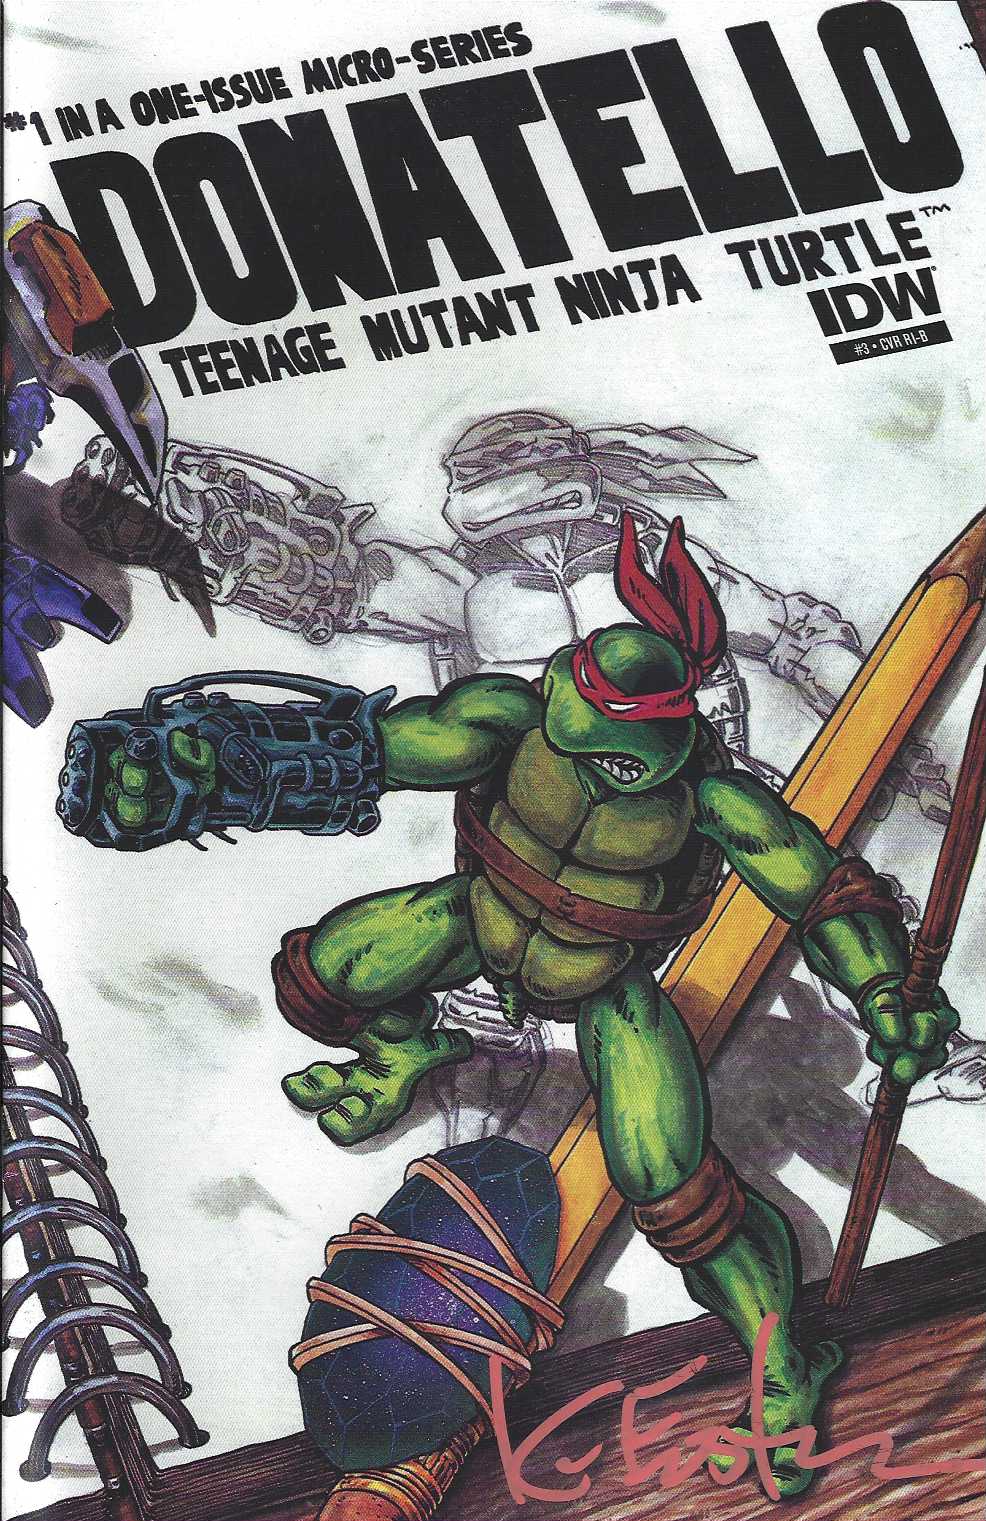 TMNT Cover RI-B Micro-Series #03 Donatello